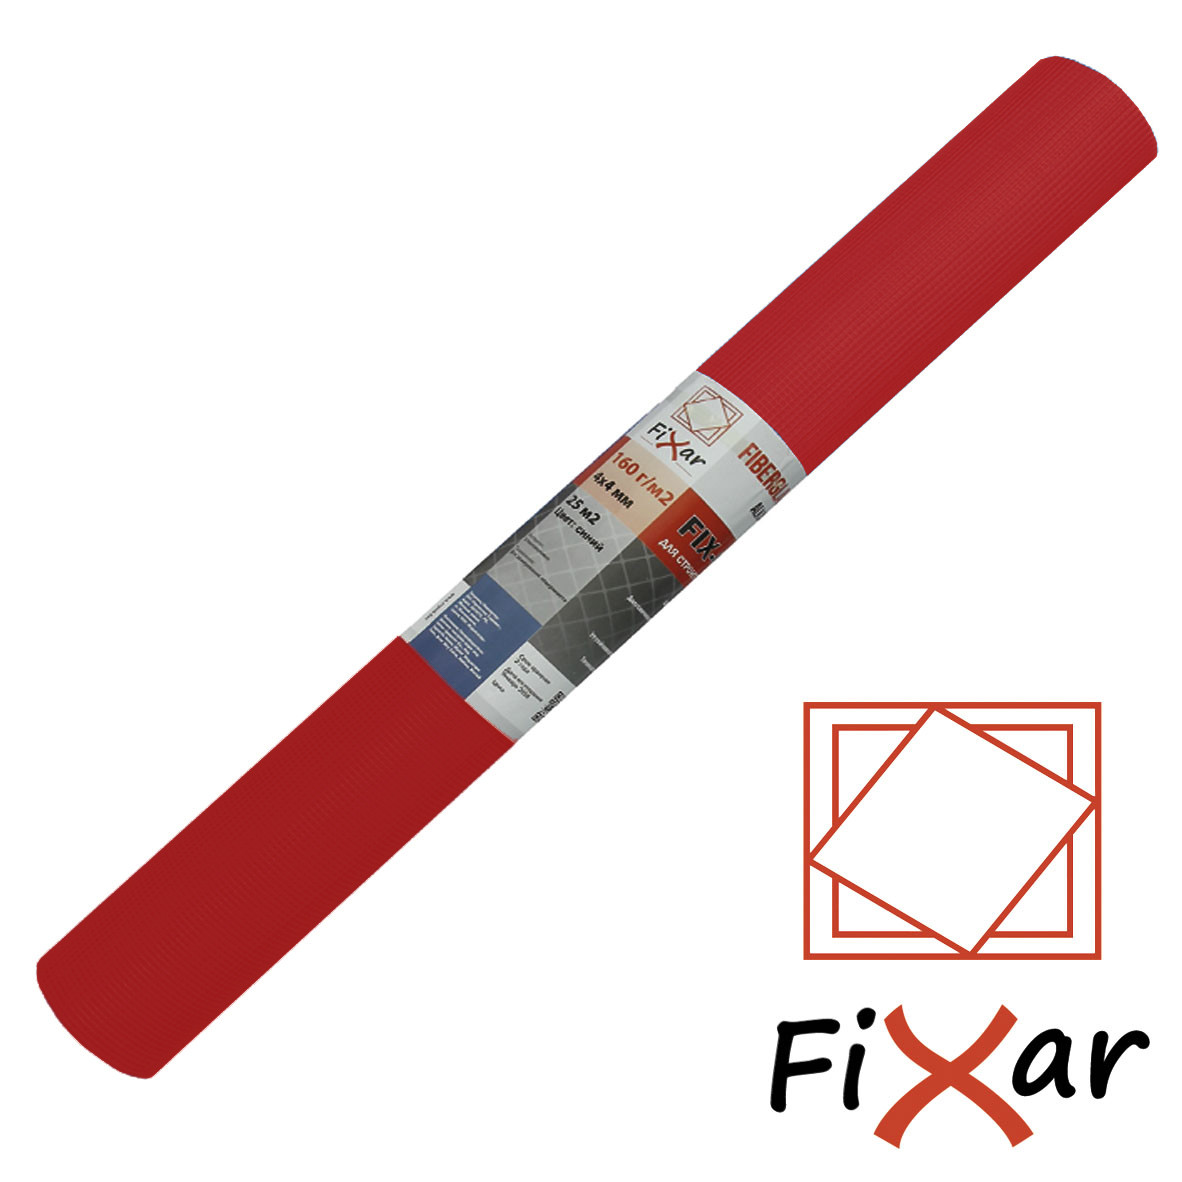 Стеклосетка торговой марки "Fixar" 5х5 мм. 160 г/м2, цвет красный